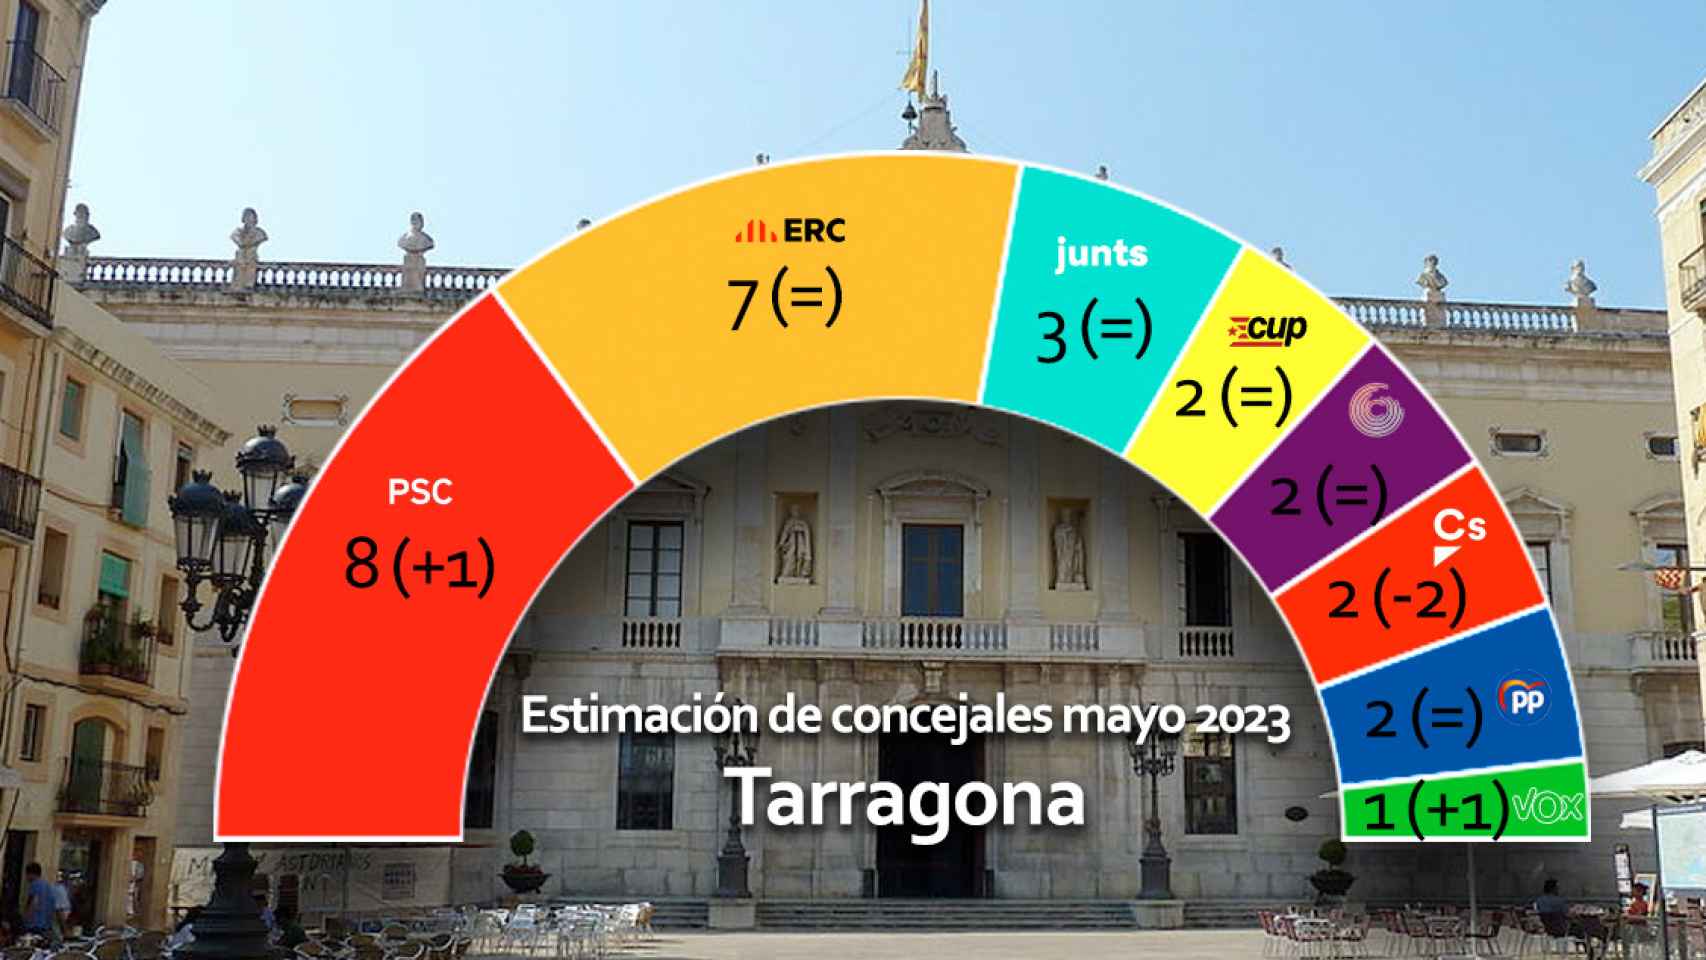 Estimación de concejales en Tarragona si las elecciones se celebrasen ahora / CG